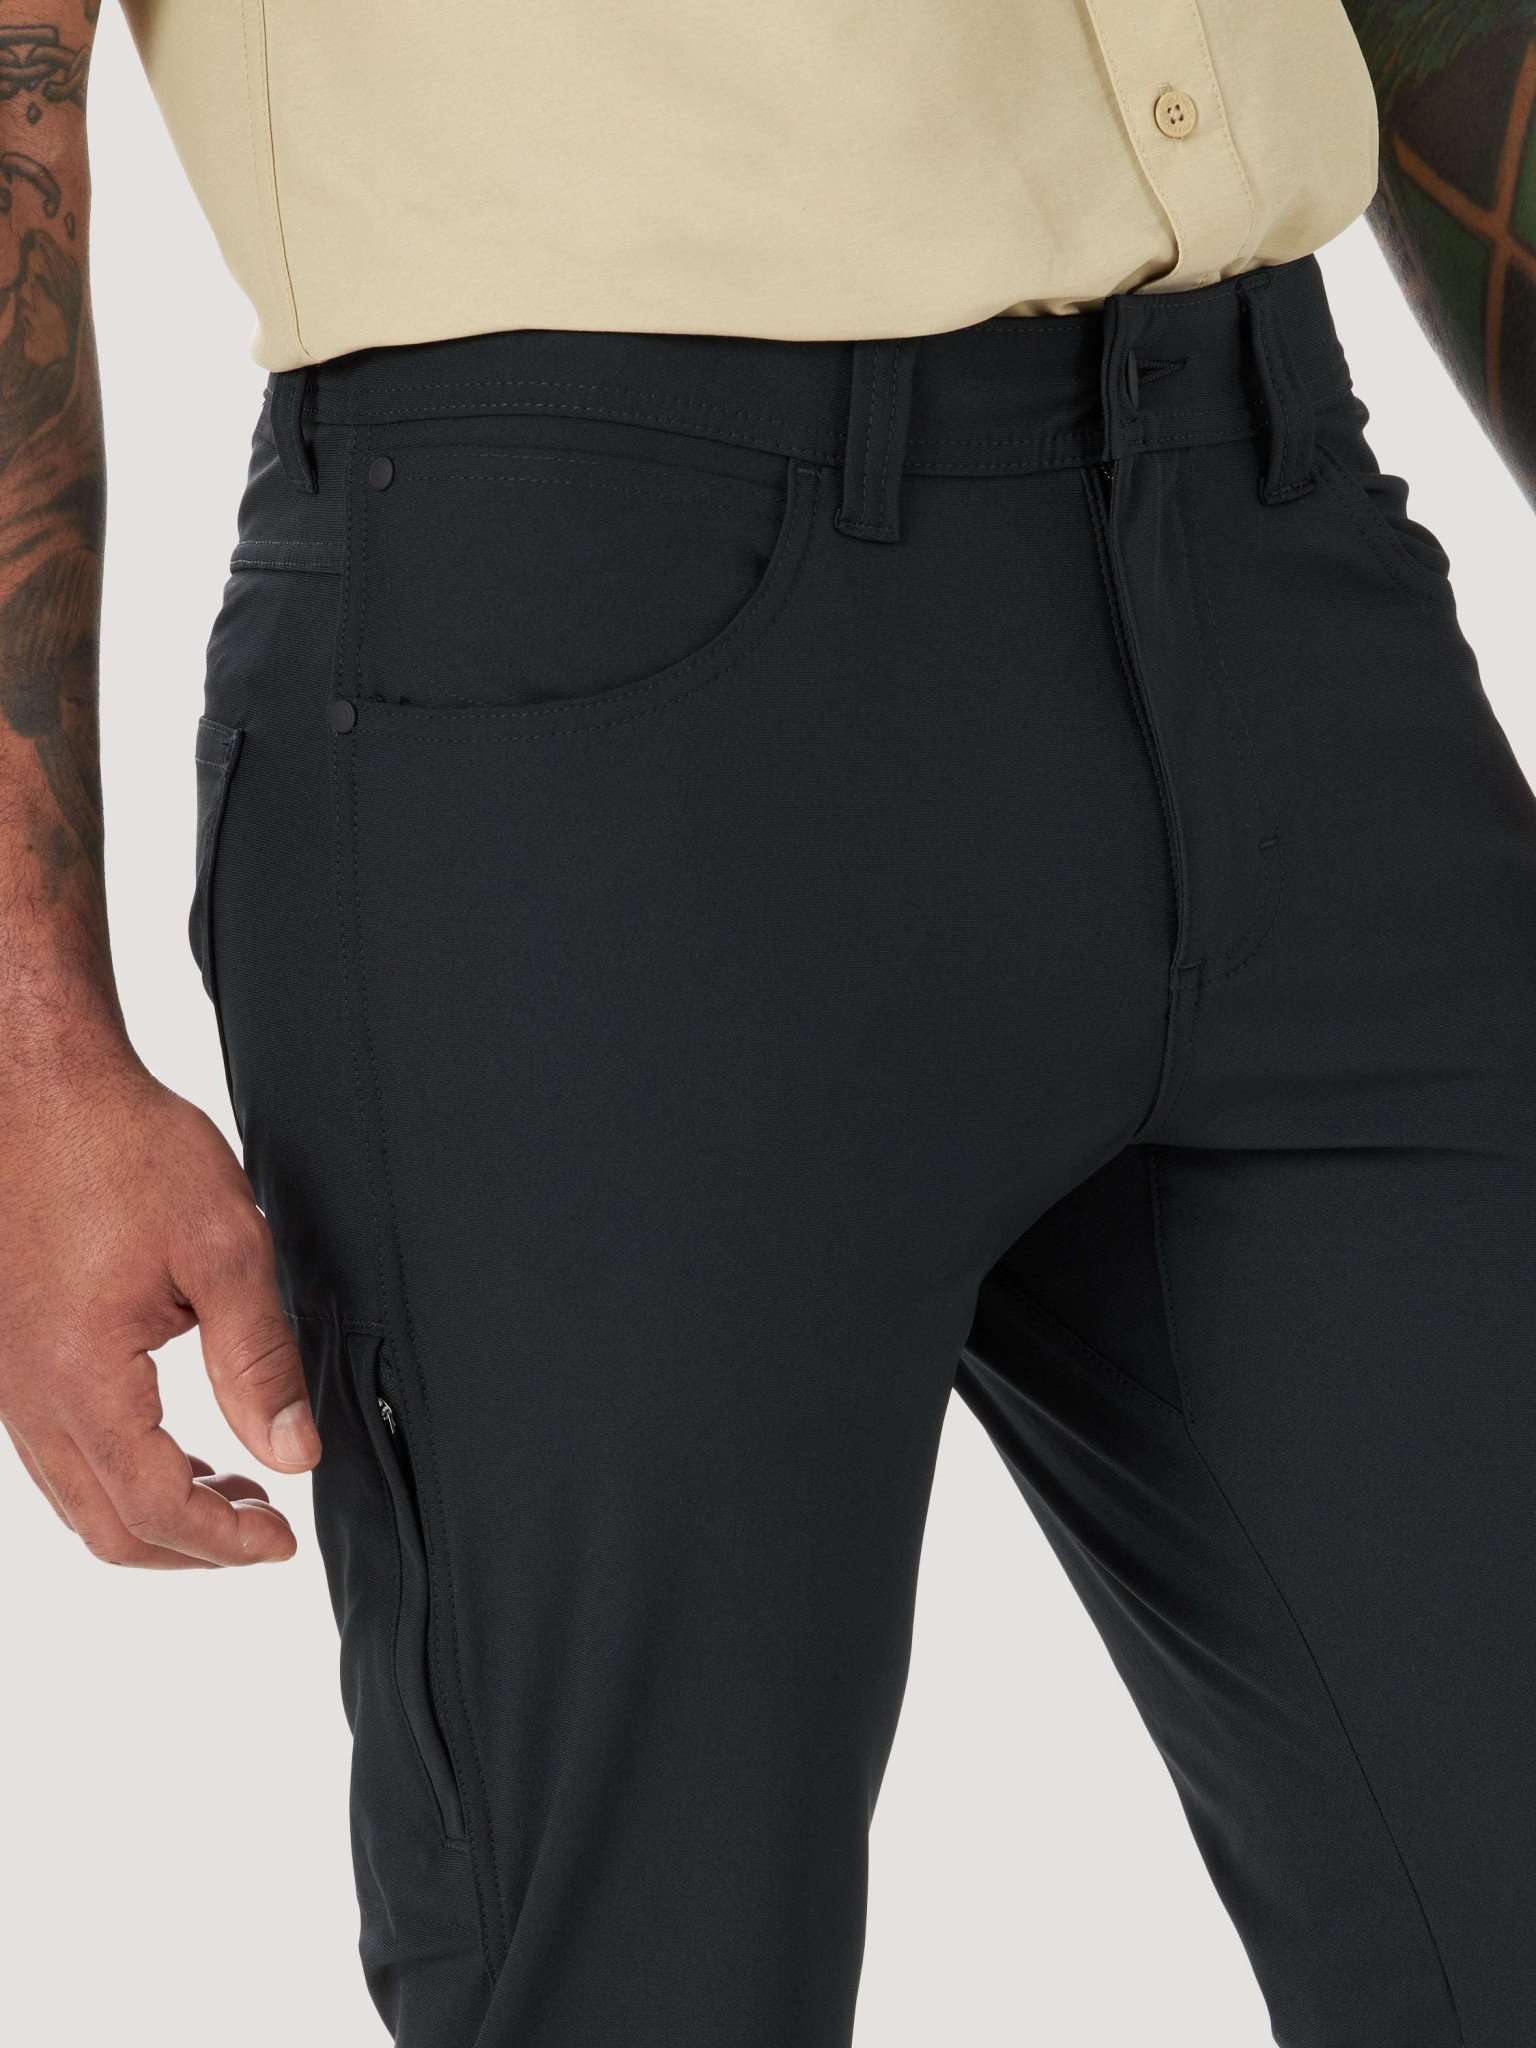 FWDS 5 Pocket Pant in Black Hosen Wrangler   